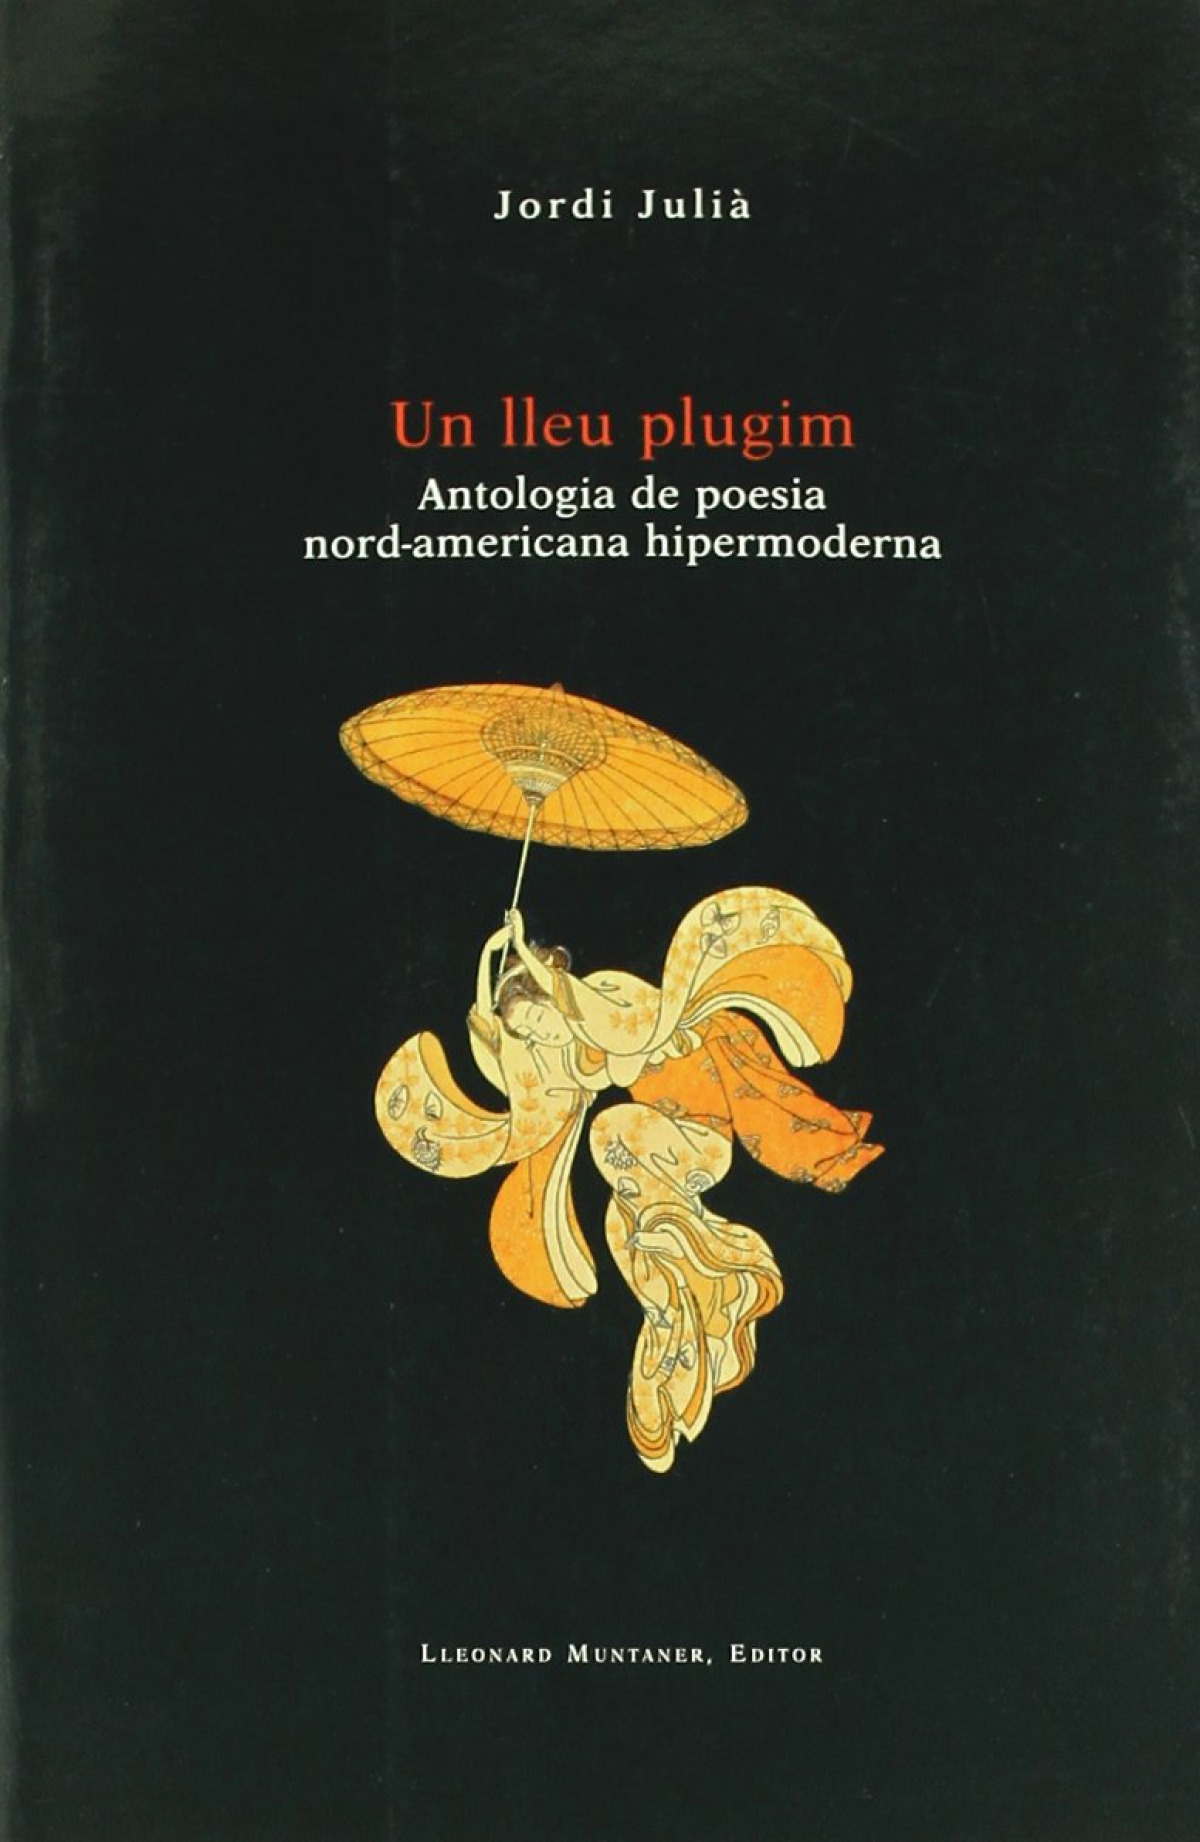 Un lleu plugim antologia de poesia nord-americana hipermoderna - Julià, Jordi